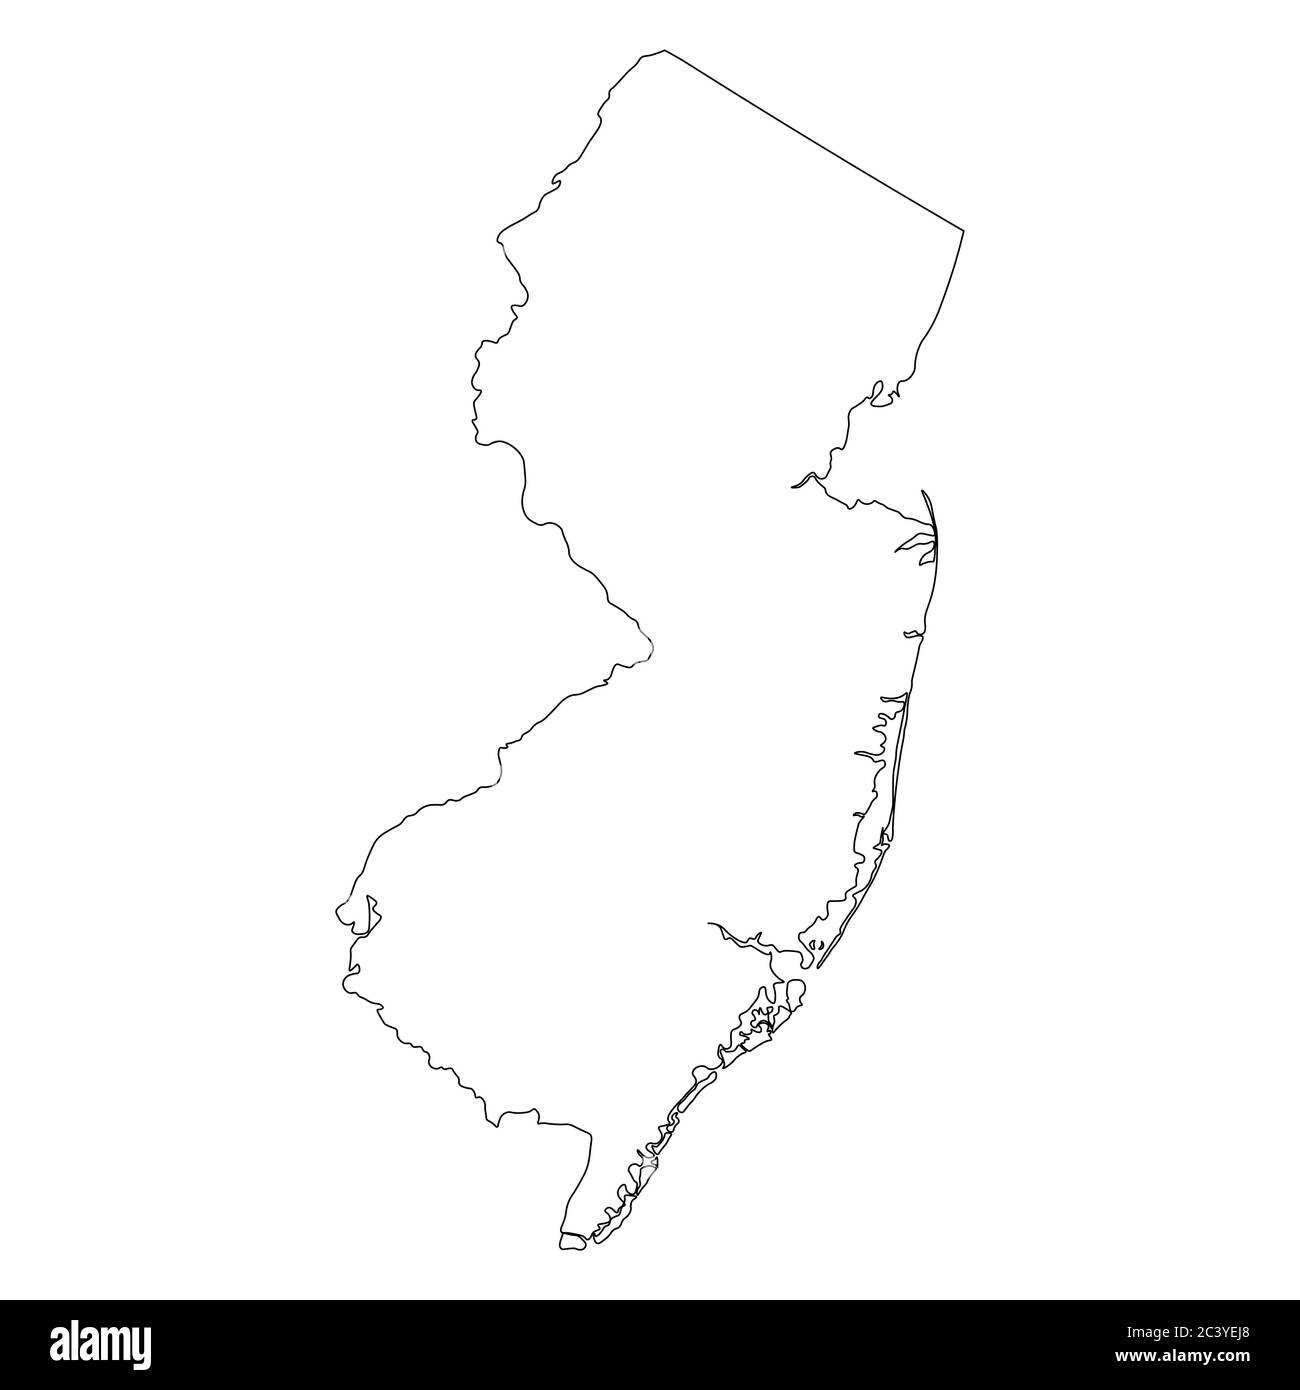 Cartes de l'État du New Jersey NJ. Carte de contour noire isolée sur fond blanc. Vecteur EPS Illustration de Vecteur